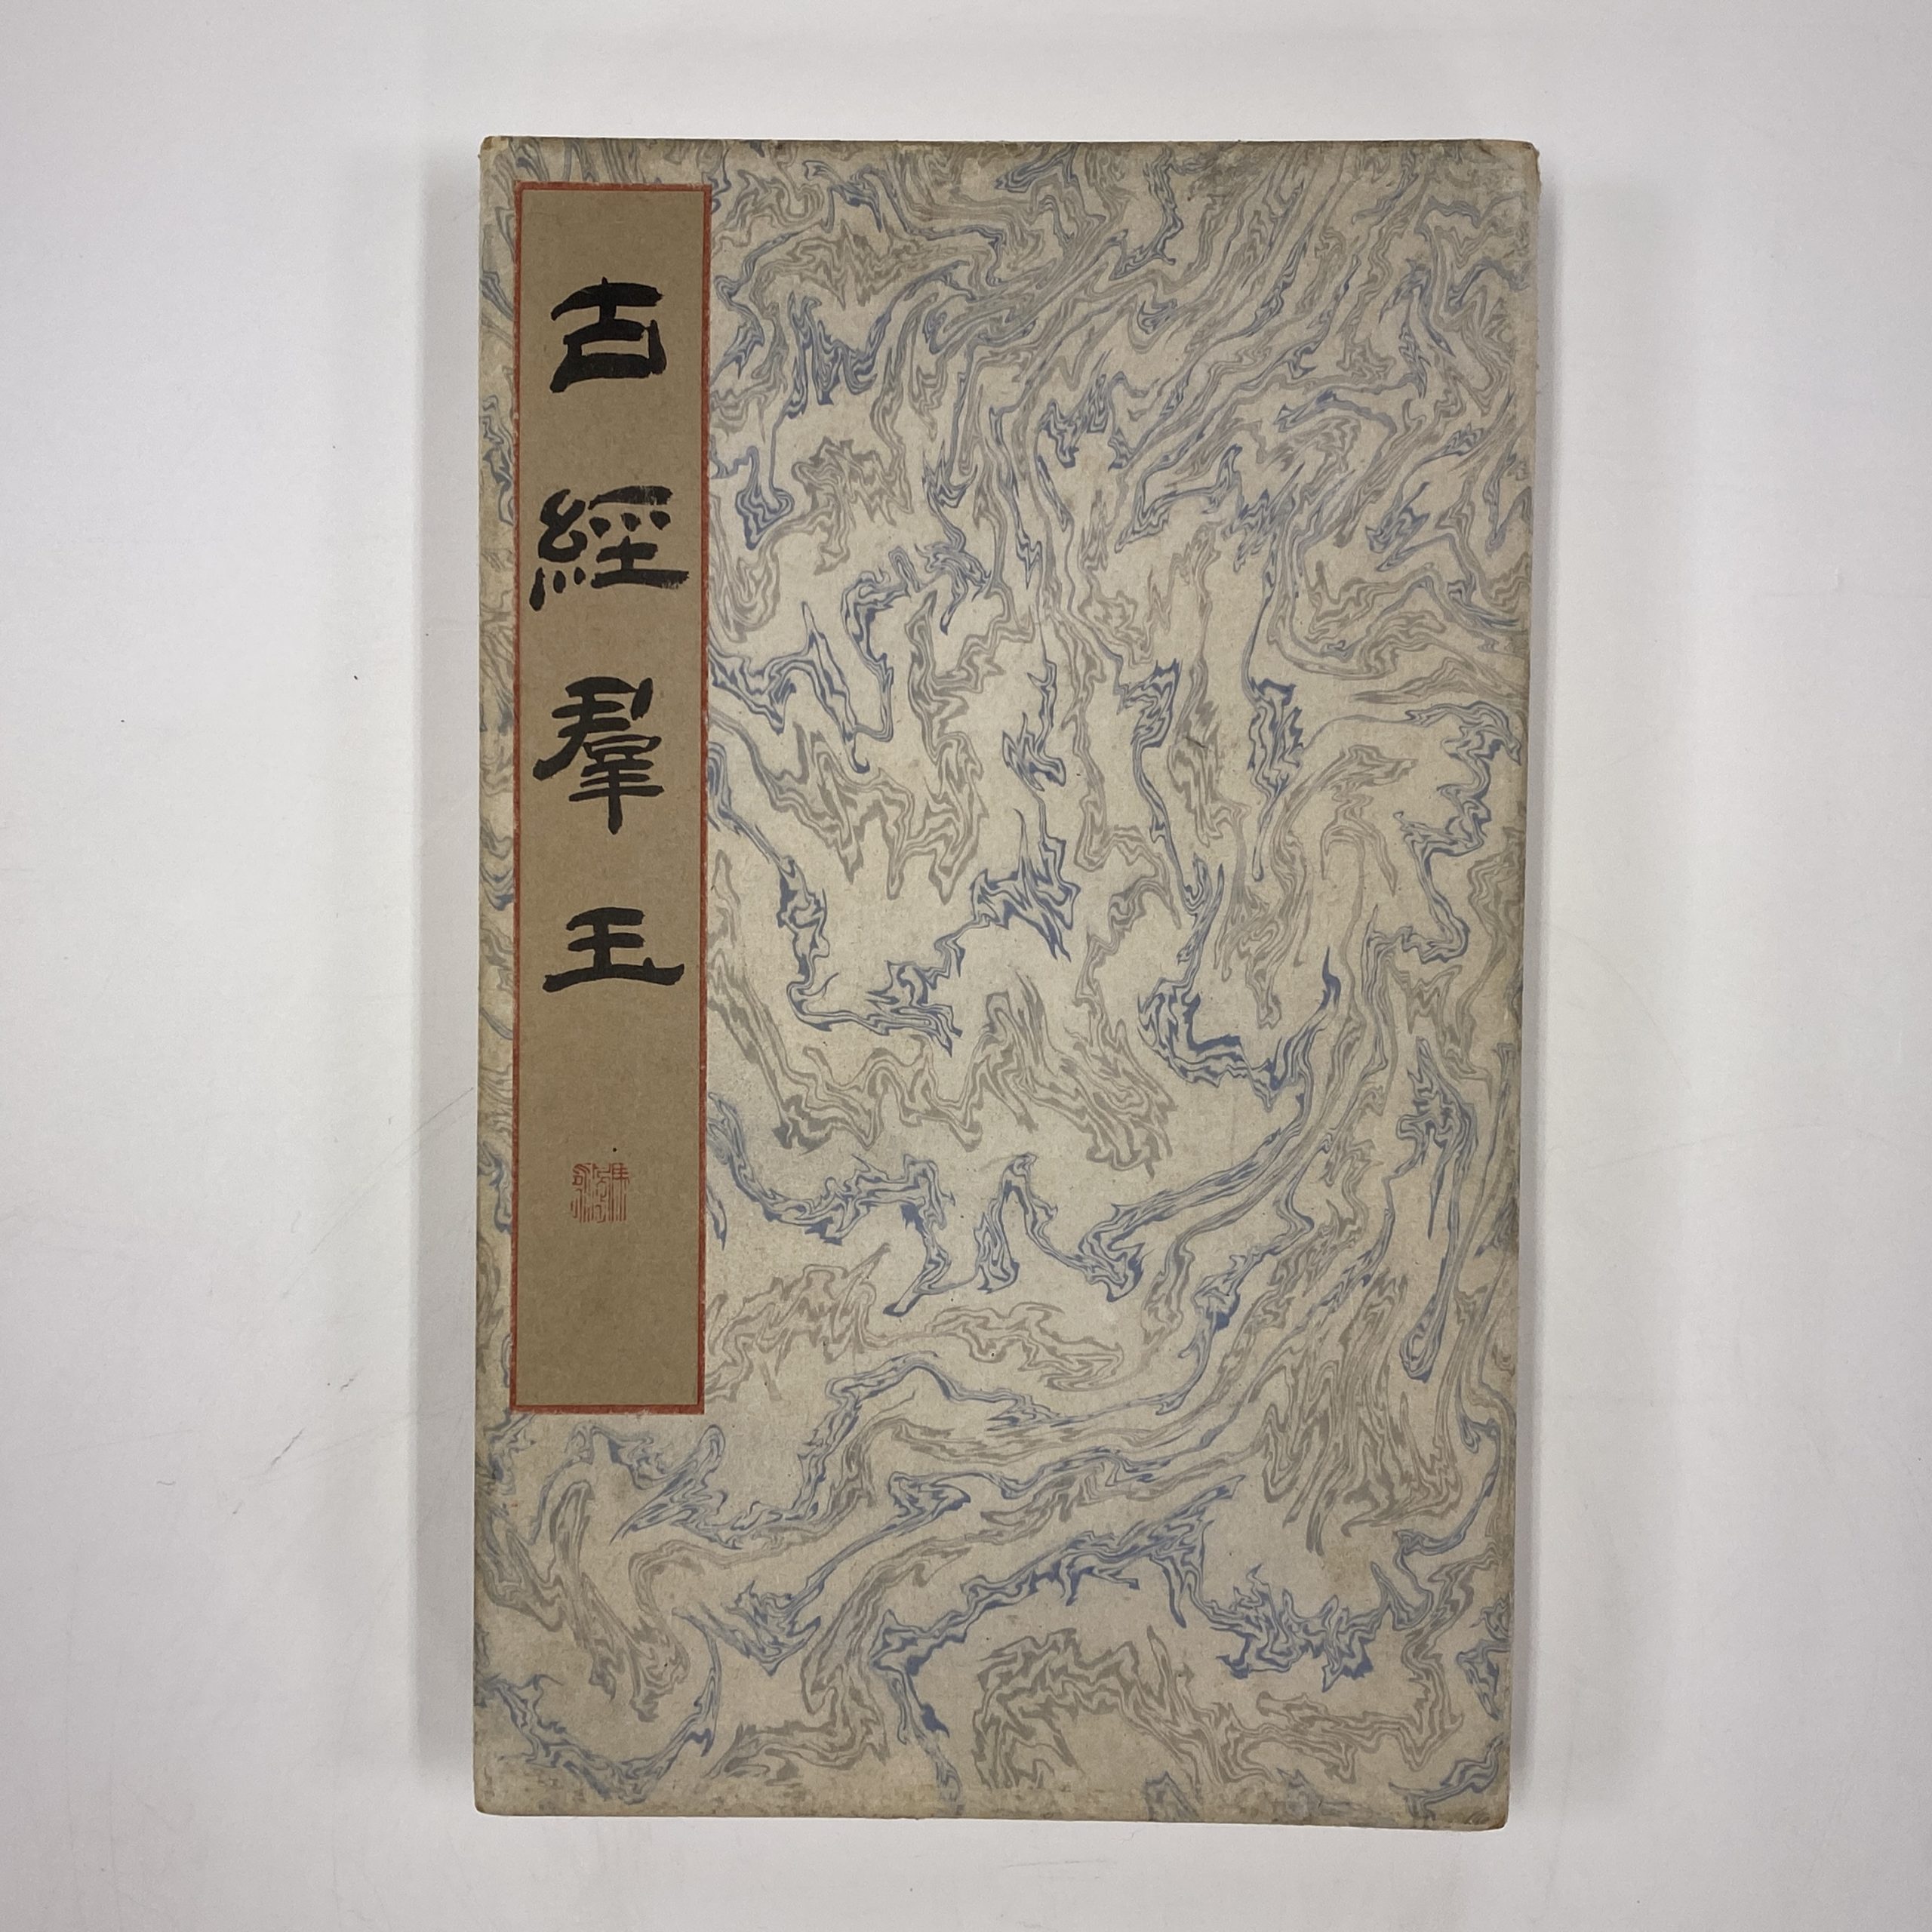 24752	「古写経群玉」一冊	25.5×9.5㎝他